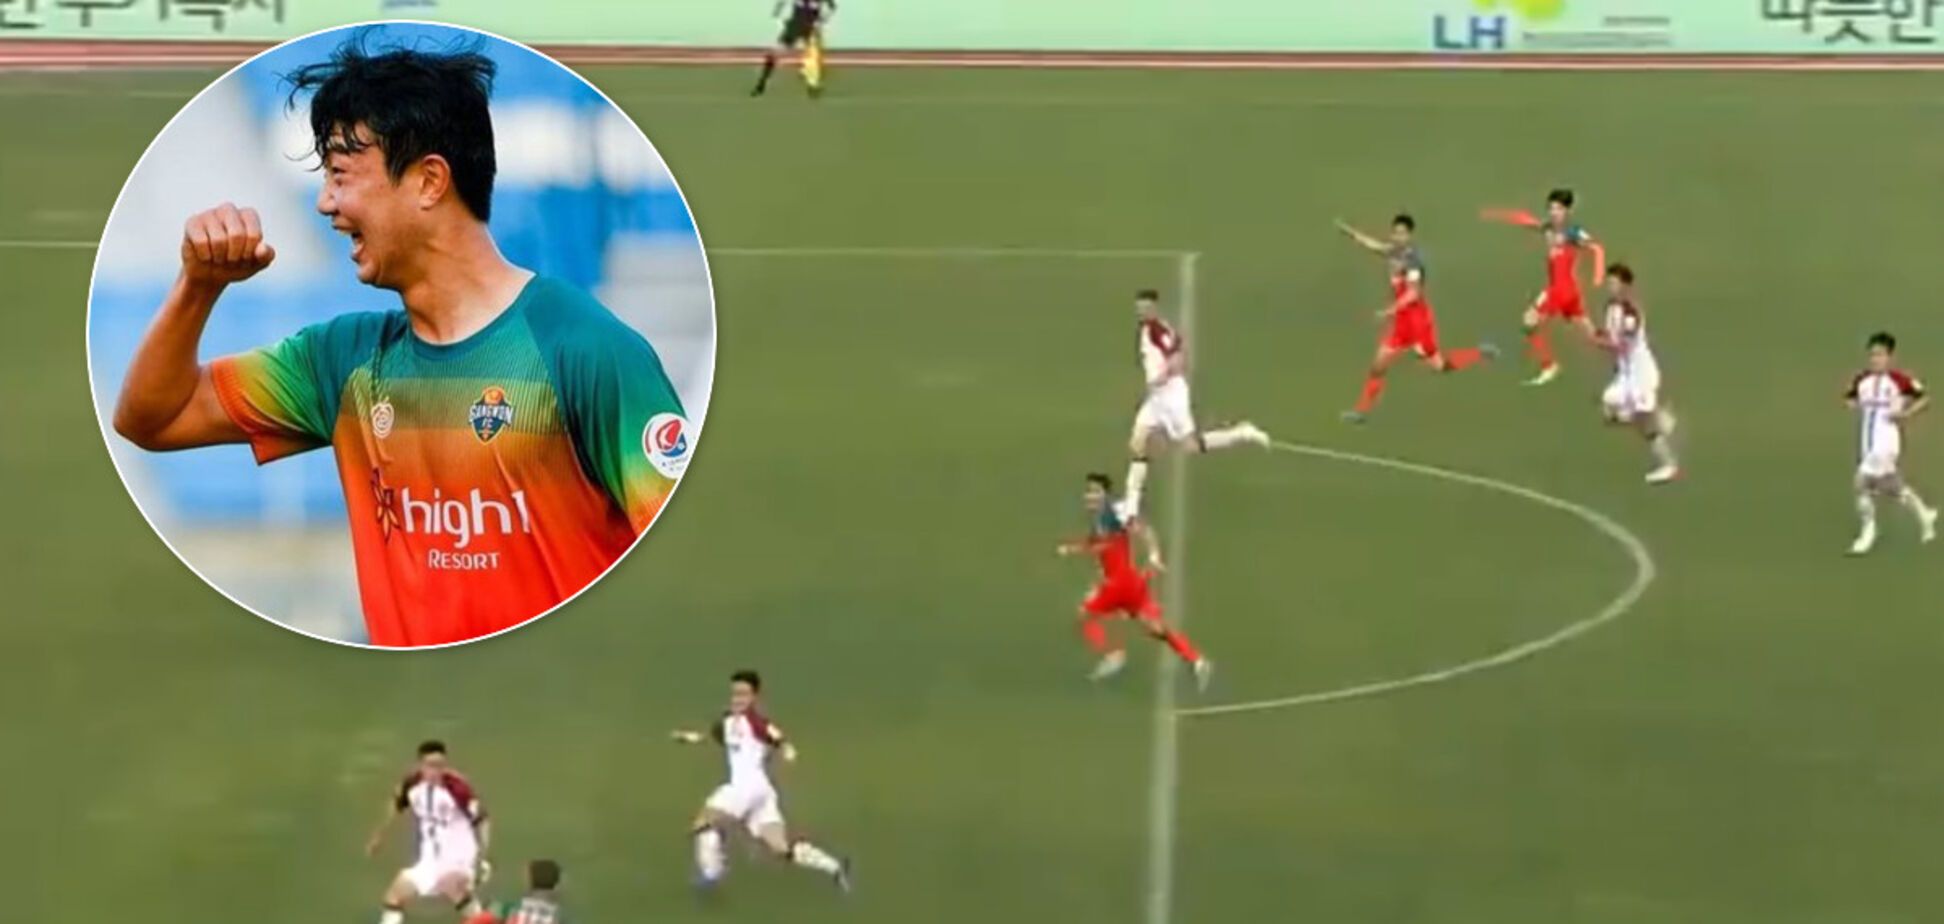 Південнокорейський футболіст забив з 'вертушки' фантастичний гол п'ятою